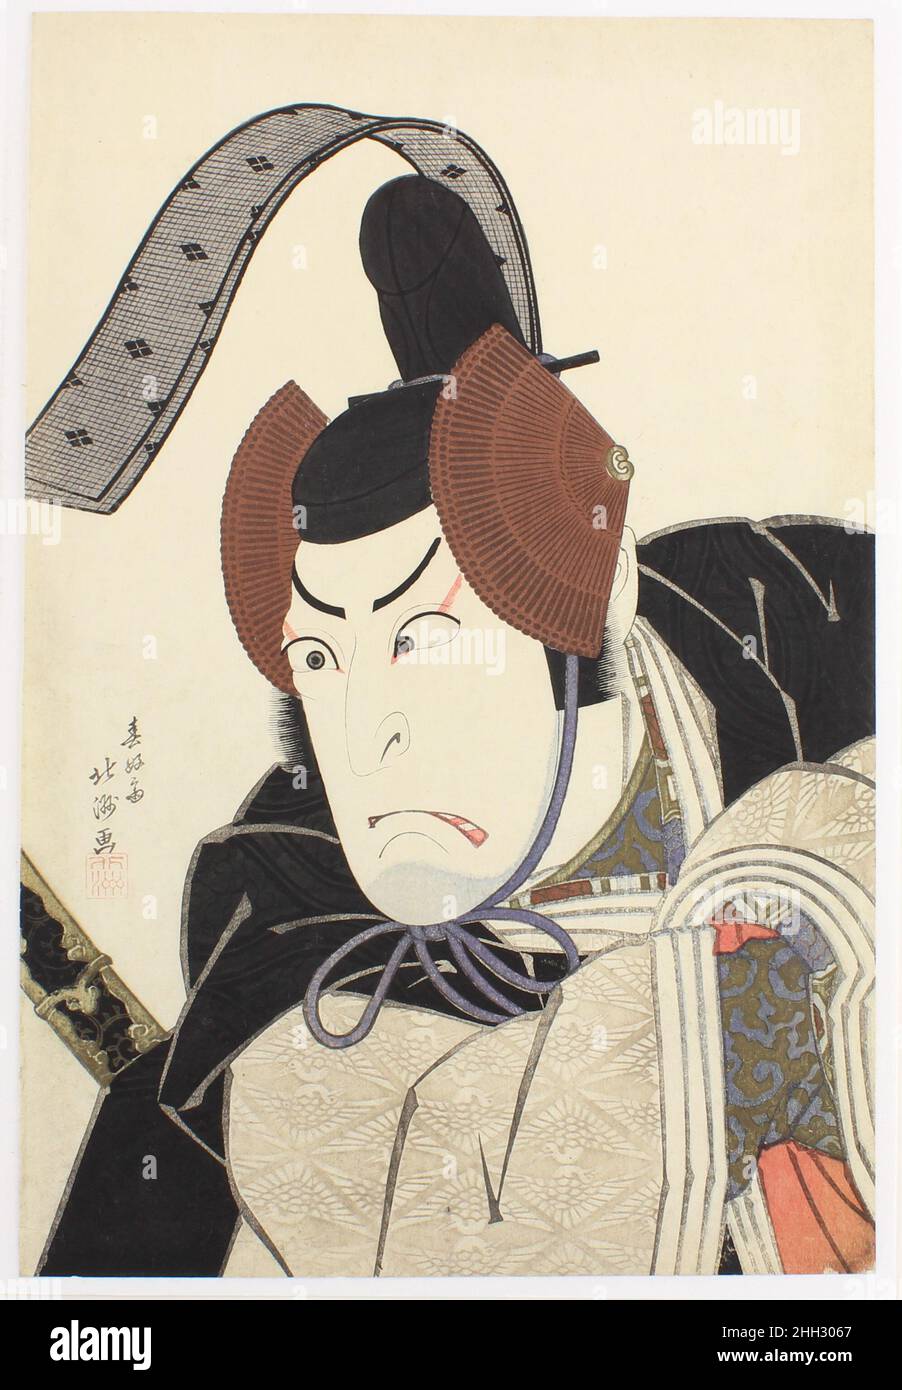 Der Kabuki-Schauspieler Nakamura Utaemon III (Shikan) als Ishikawa Goemon 1822 Shunkōsai Hokushū 春好斎北洲 Dieses dynamische Porträt des in Osaka lebenden Künstlers Shunkōsai Hokushū zeigt den gefeierten Kabuki-Schauspieler Utaemon III (1778–1838) in der Rolle des legendären Banditen-Helden Ishikawa Goemon, Hier verkleidet in den gestohlenen Gewändern und der Mütze eines kaiserlichen Boten. Goemon hat eine Szene aus dem Theaterstück das Goldene Tor und das Paulownia Wappen (Kinmon gosan no kiri) aufgenommen und einen Plan geschlüpft, um das Kaiserliche Siegel zu stehlen und damit seine diktatorischen Ambitionen zu verwirklichen, schließlich die Kontrolle über den Palast zu übernehmen und den Grafen zu regieren Stockfoto